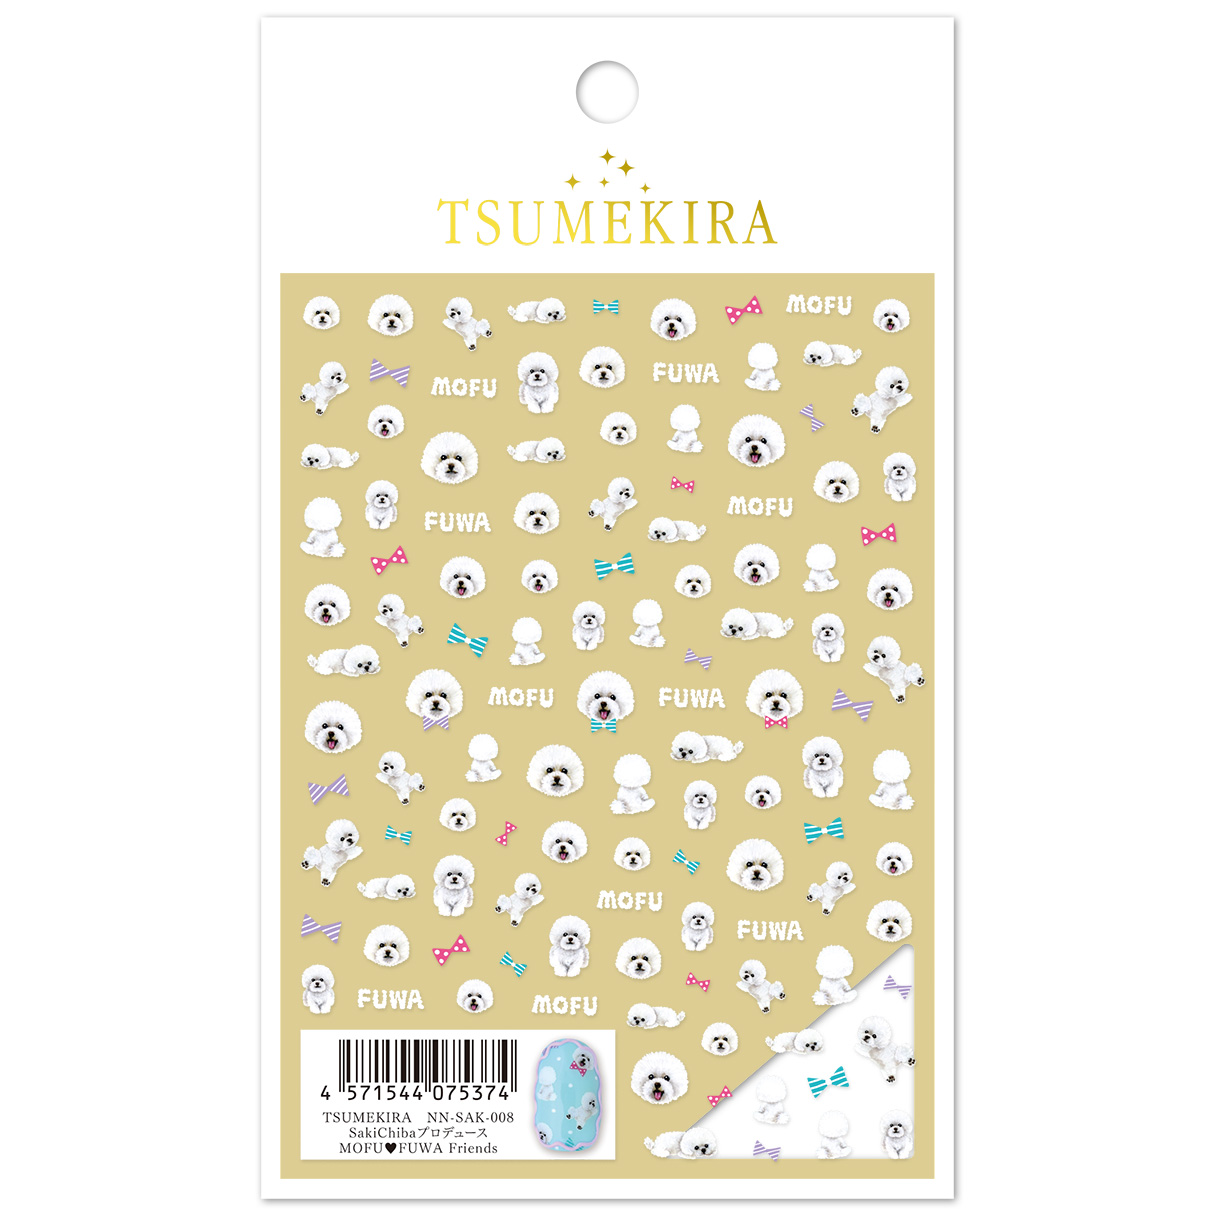 [On order/not returnable] NN-SAK-008 Produced by SakiChiba MOFU FUWA Friends Tsume Kira Nail Stickers (sheets)